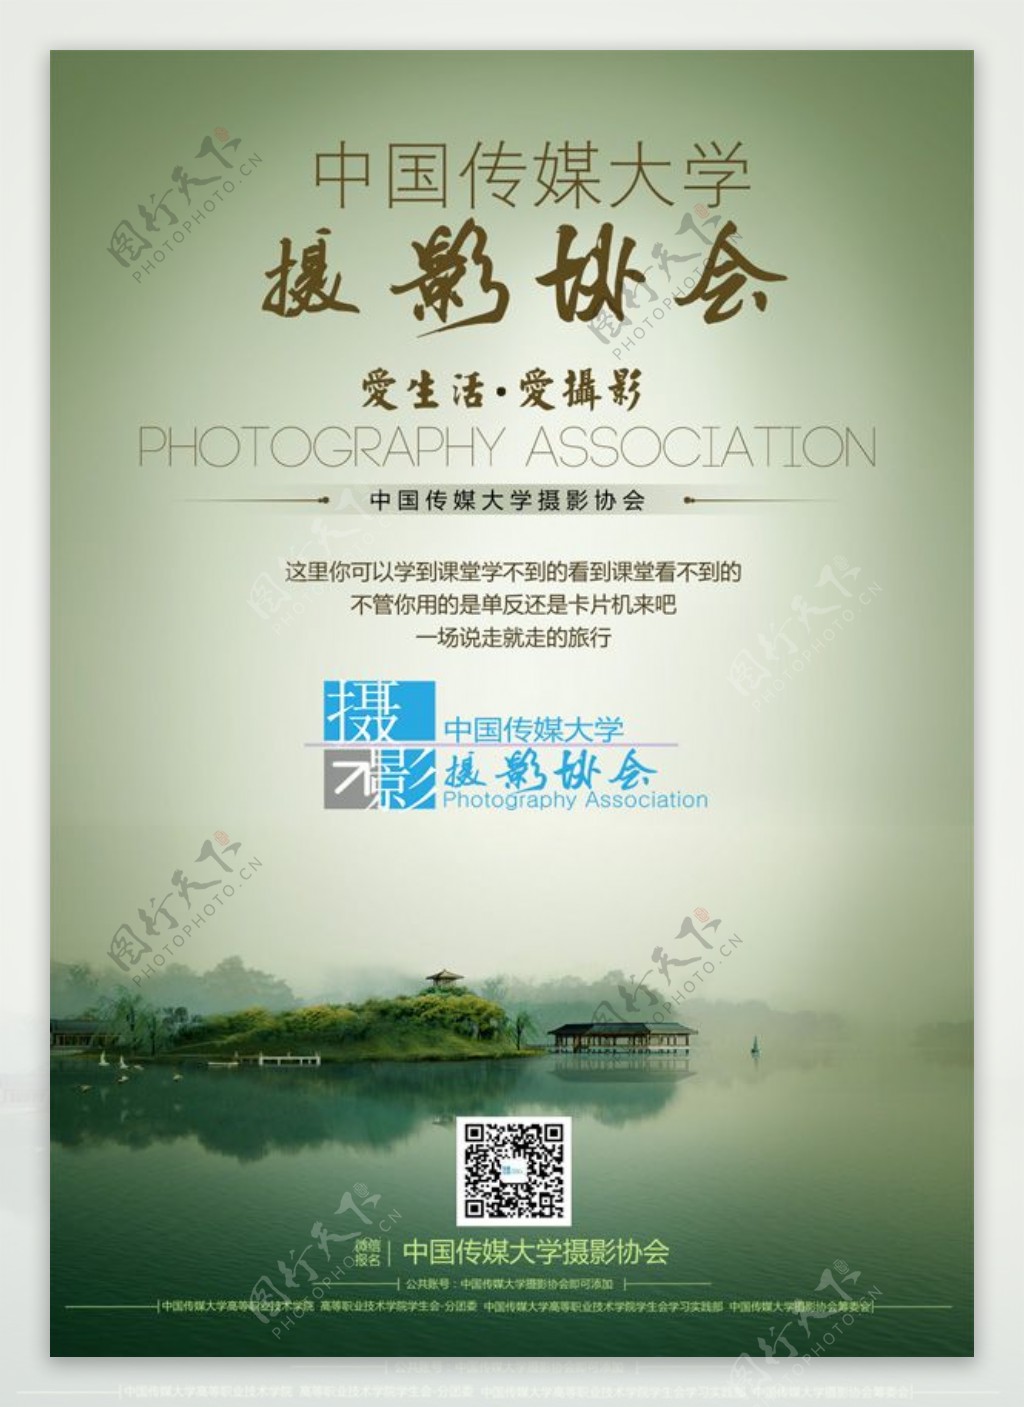 中国传媒大学摄影协会宣传